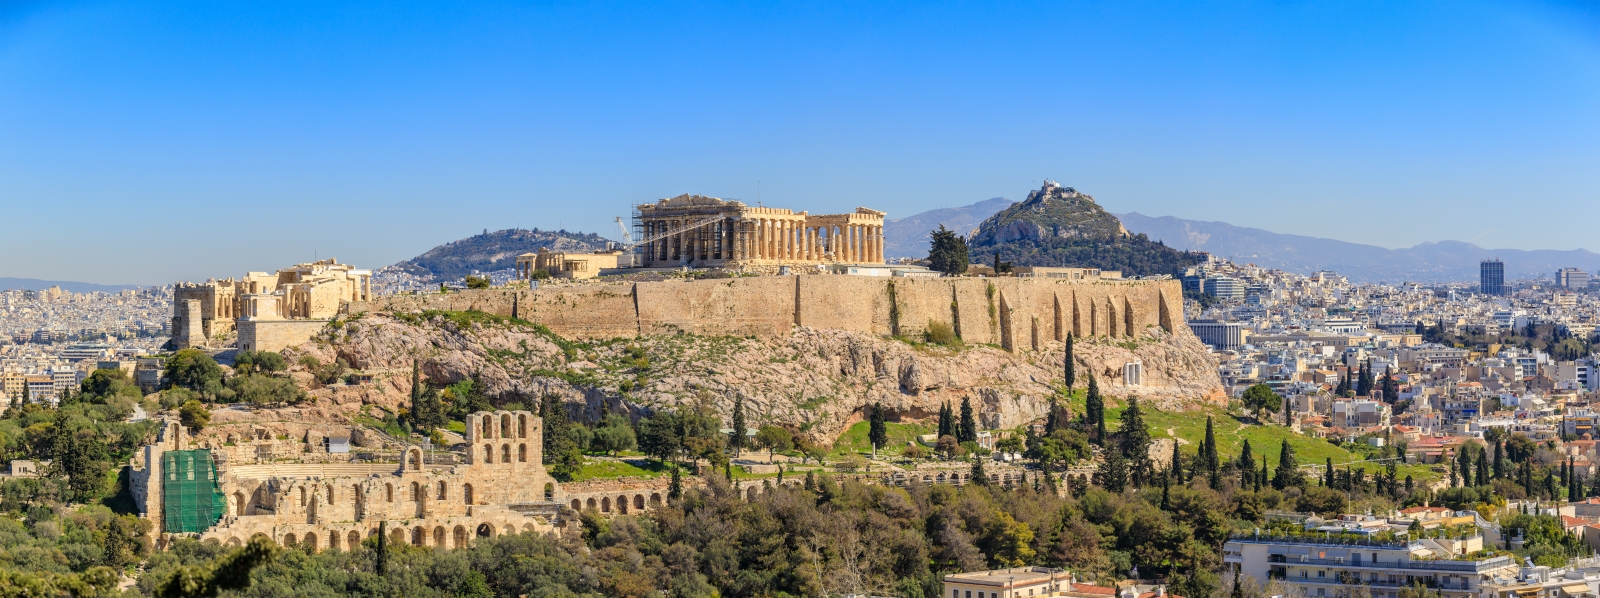 Blick auf die Stadtlandschaft von Athen mit der Akropolis